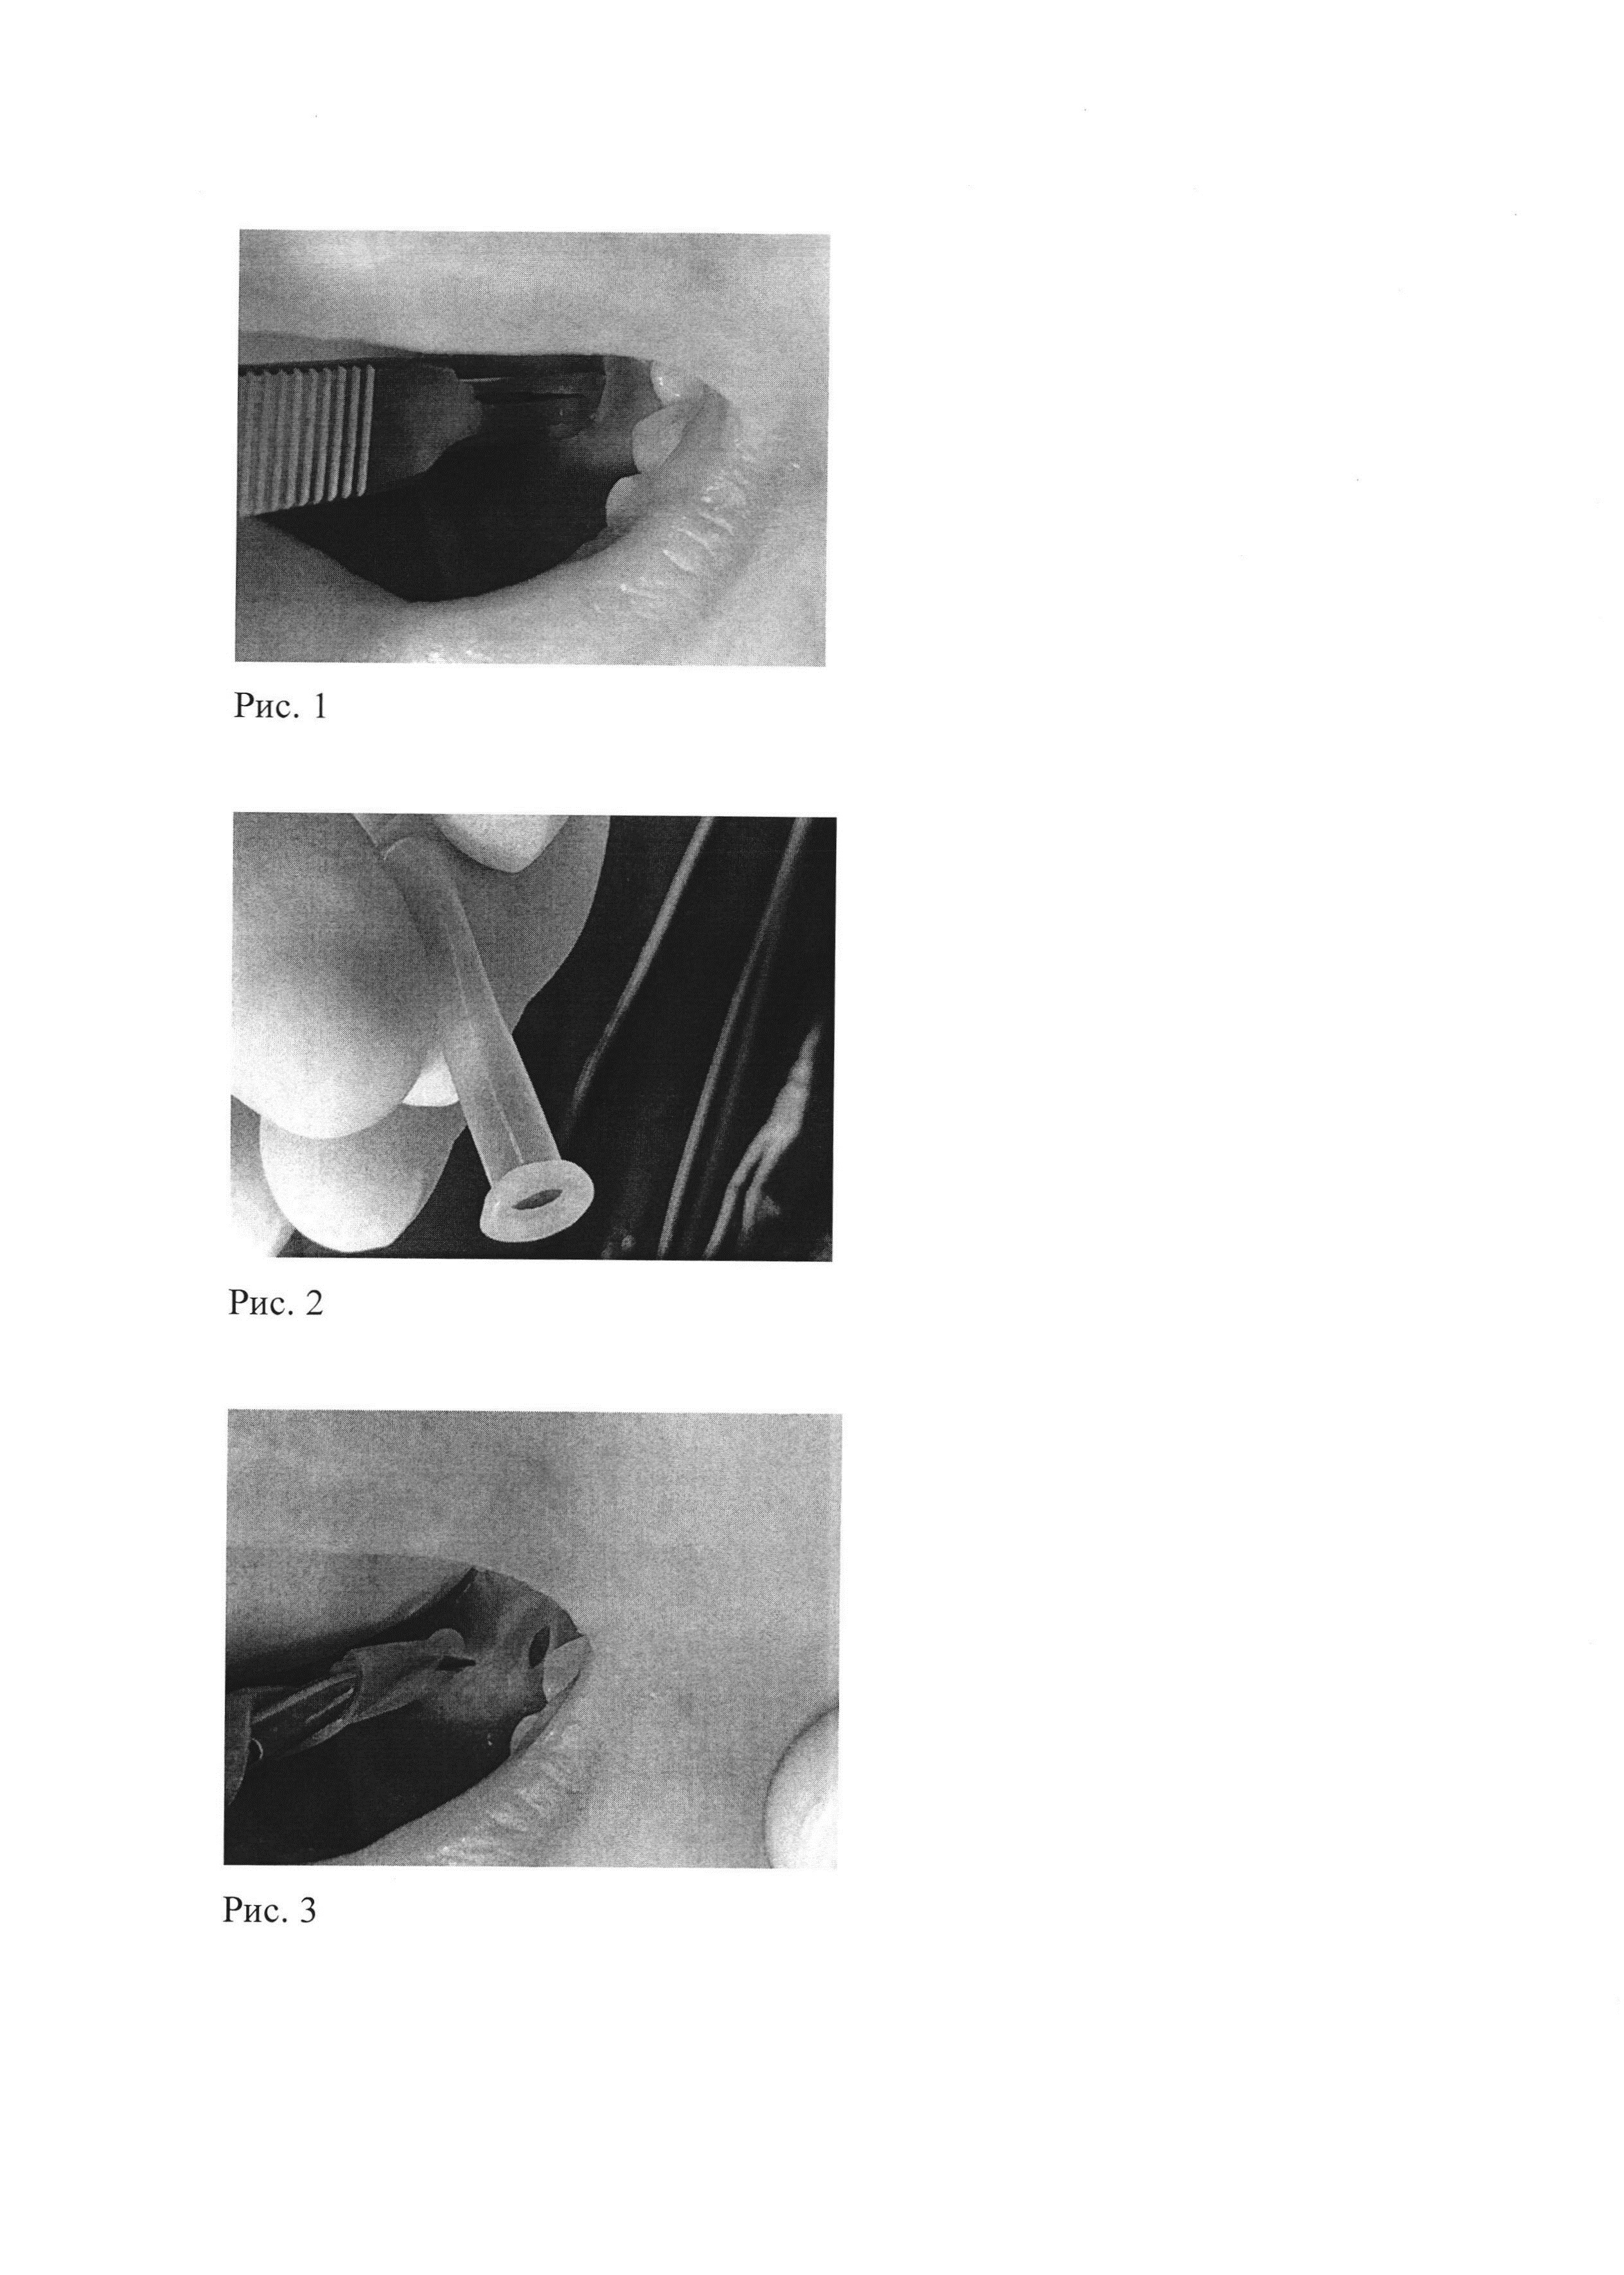 Способ лечения кисты подъязычной слюнной железы (ранулы)